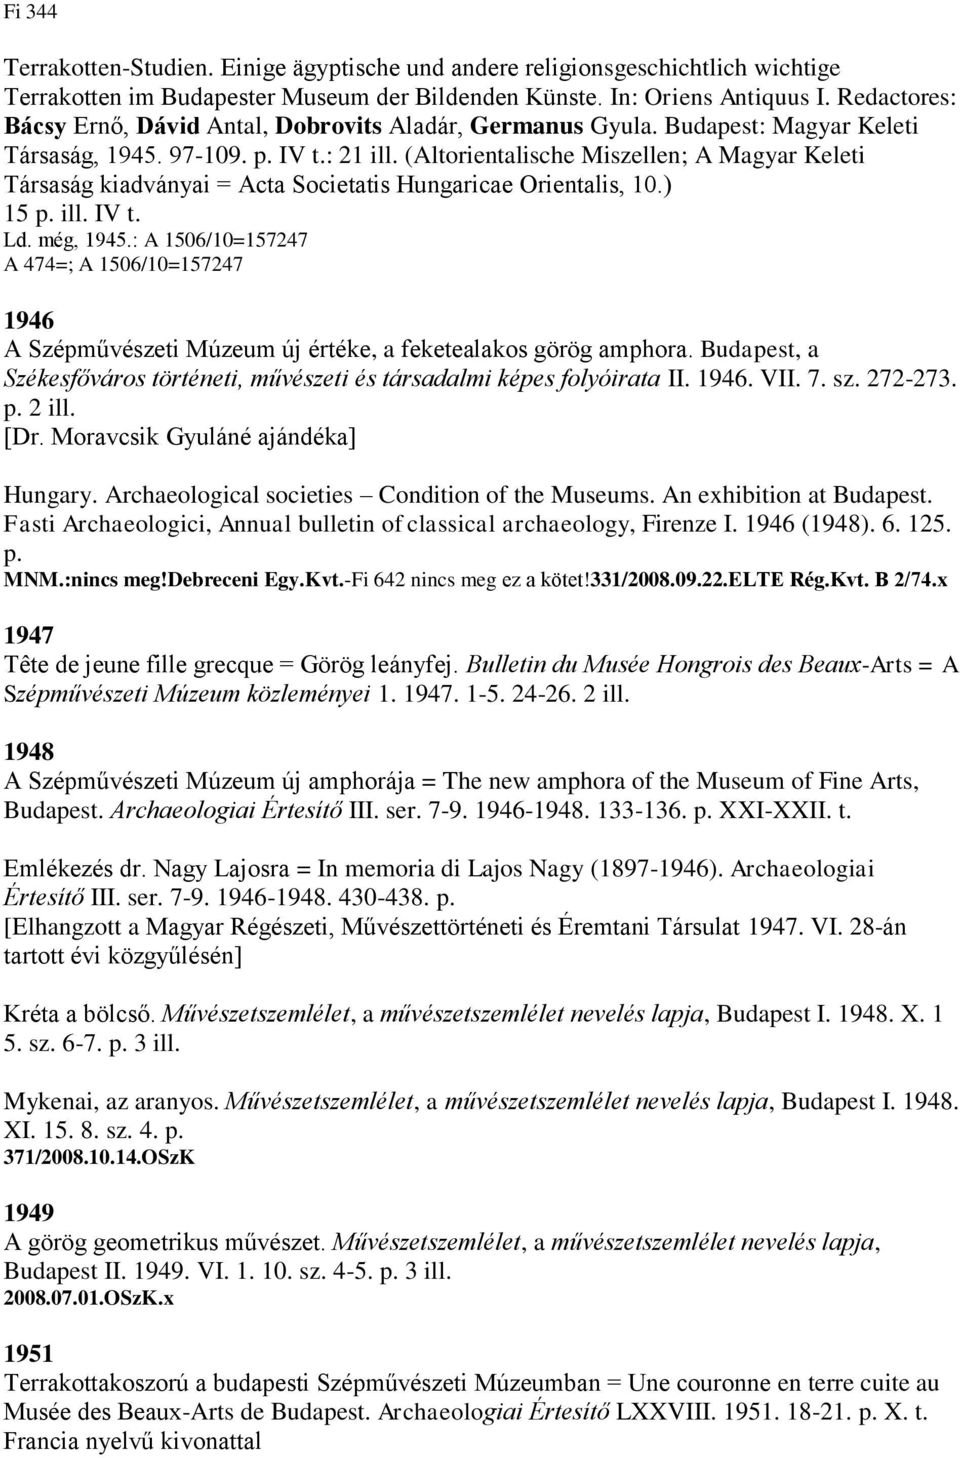 (Altorientalische Miszellen; A Magyar Keleti Társaság kiadványai = Acta Societatis Hungaricae Orientalis, 10.) 15 p. ill. IV t. Ld. még, 1945.